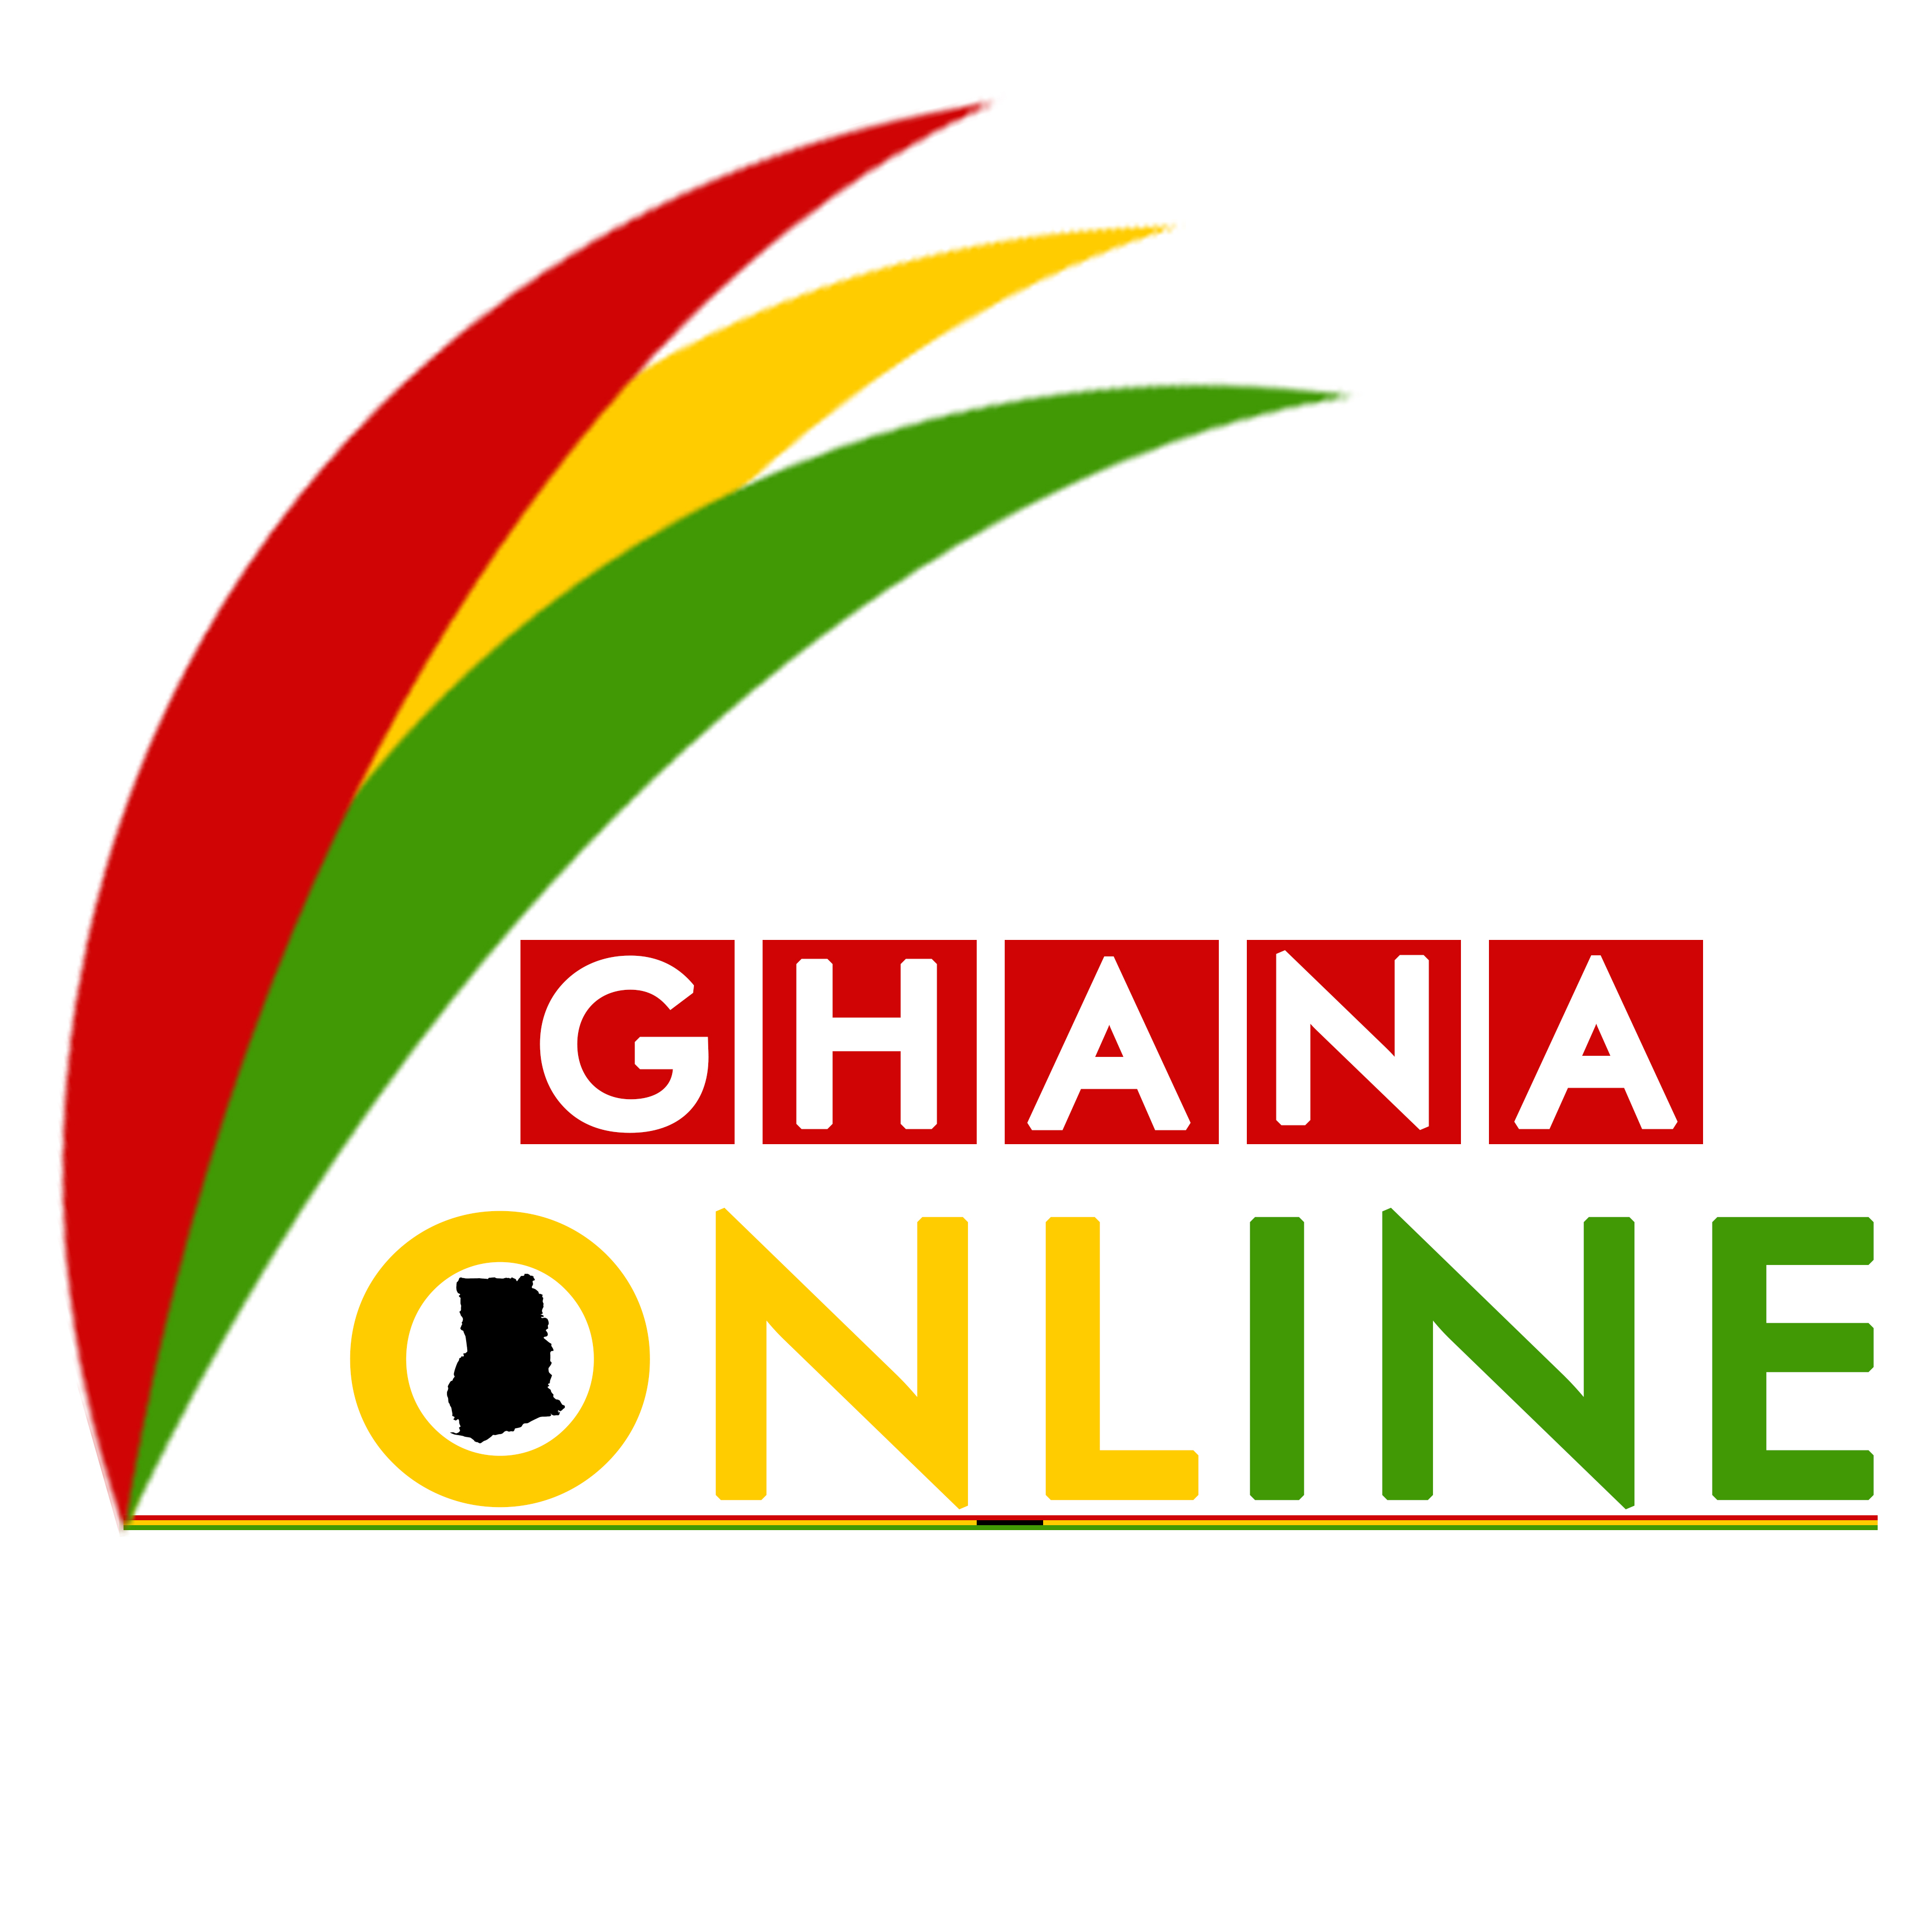 Ghana Online